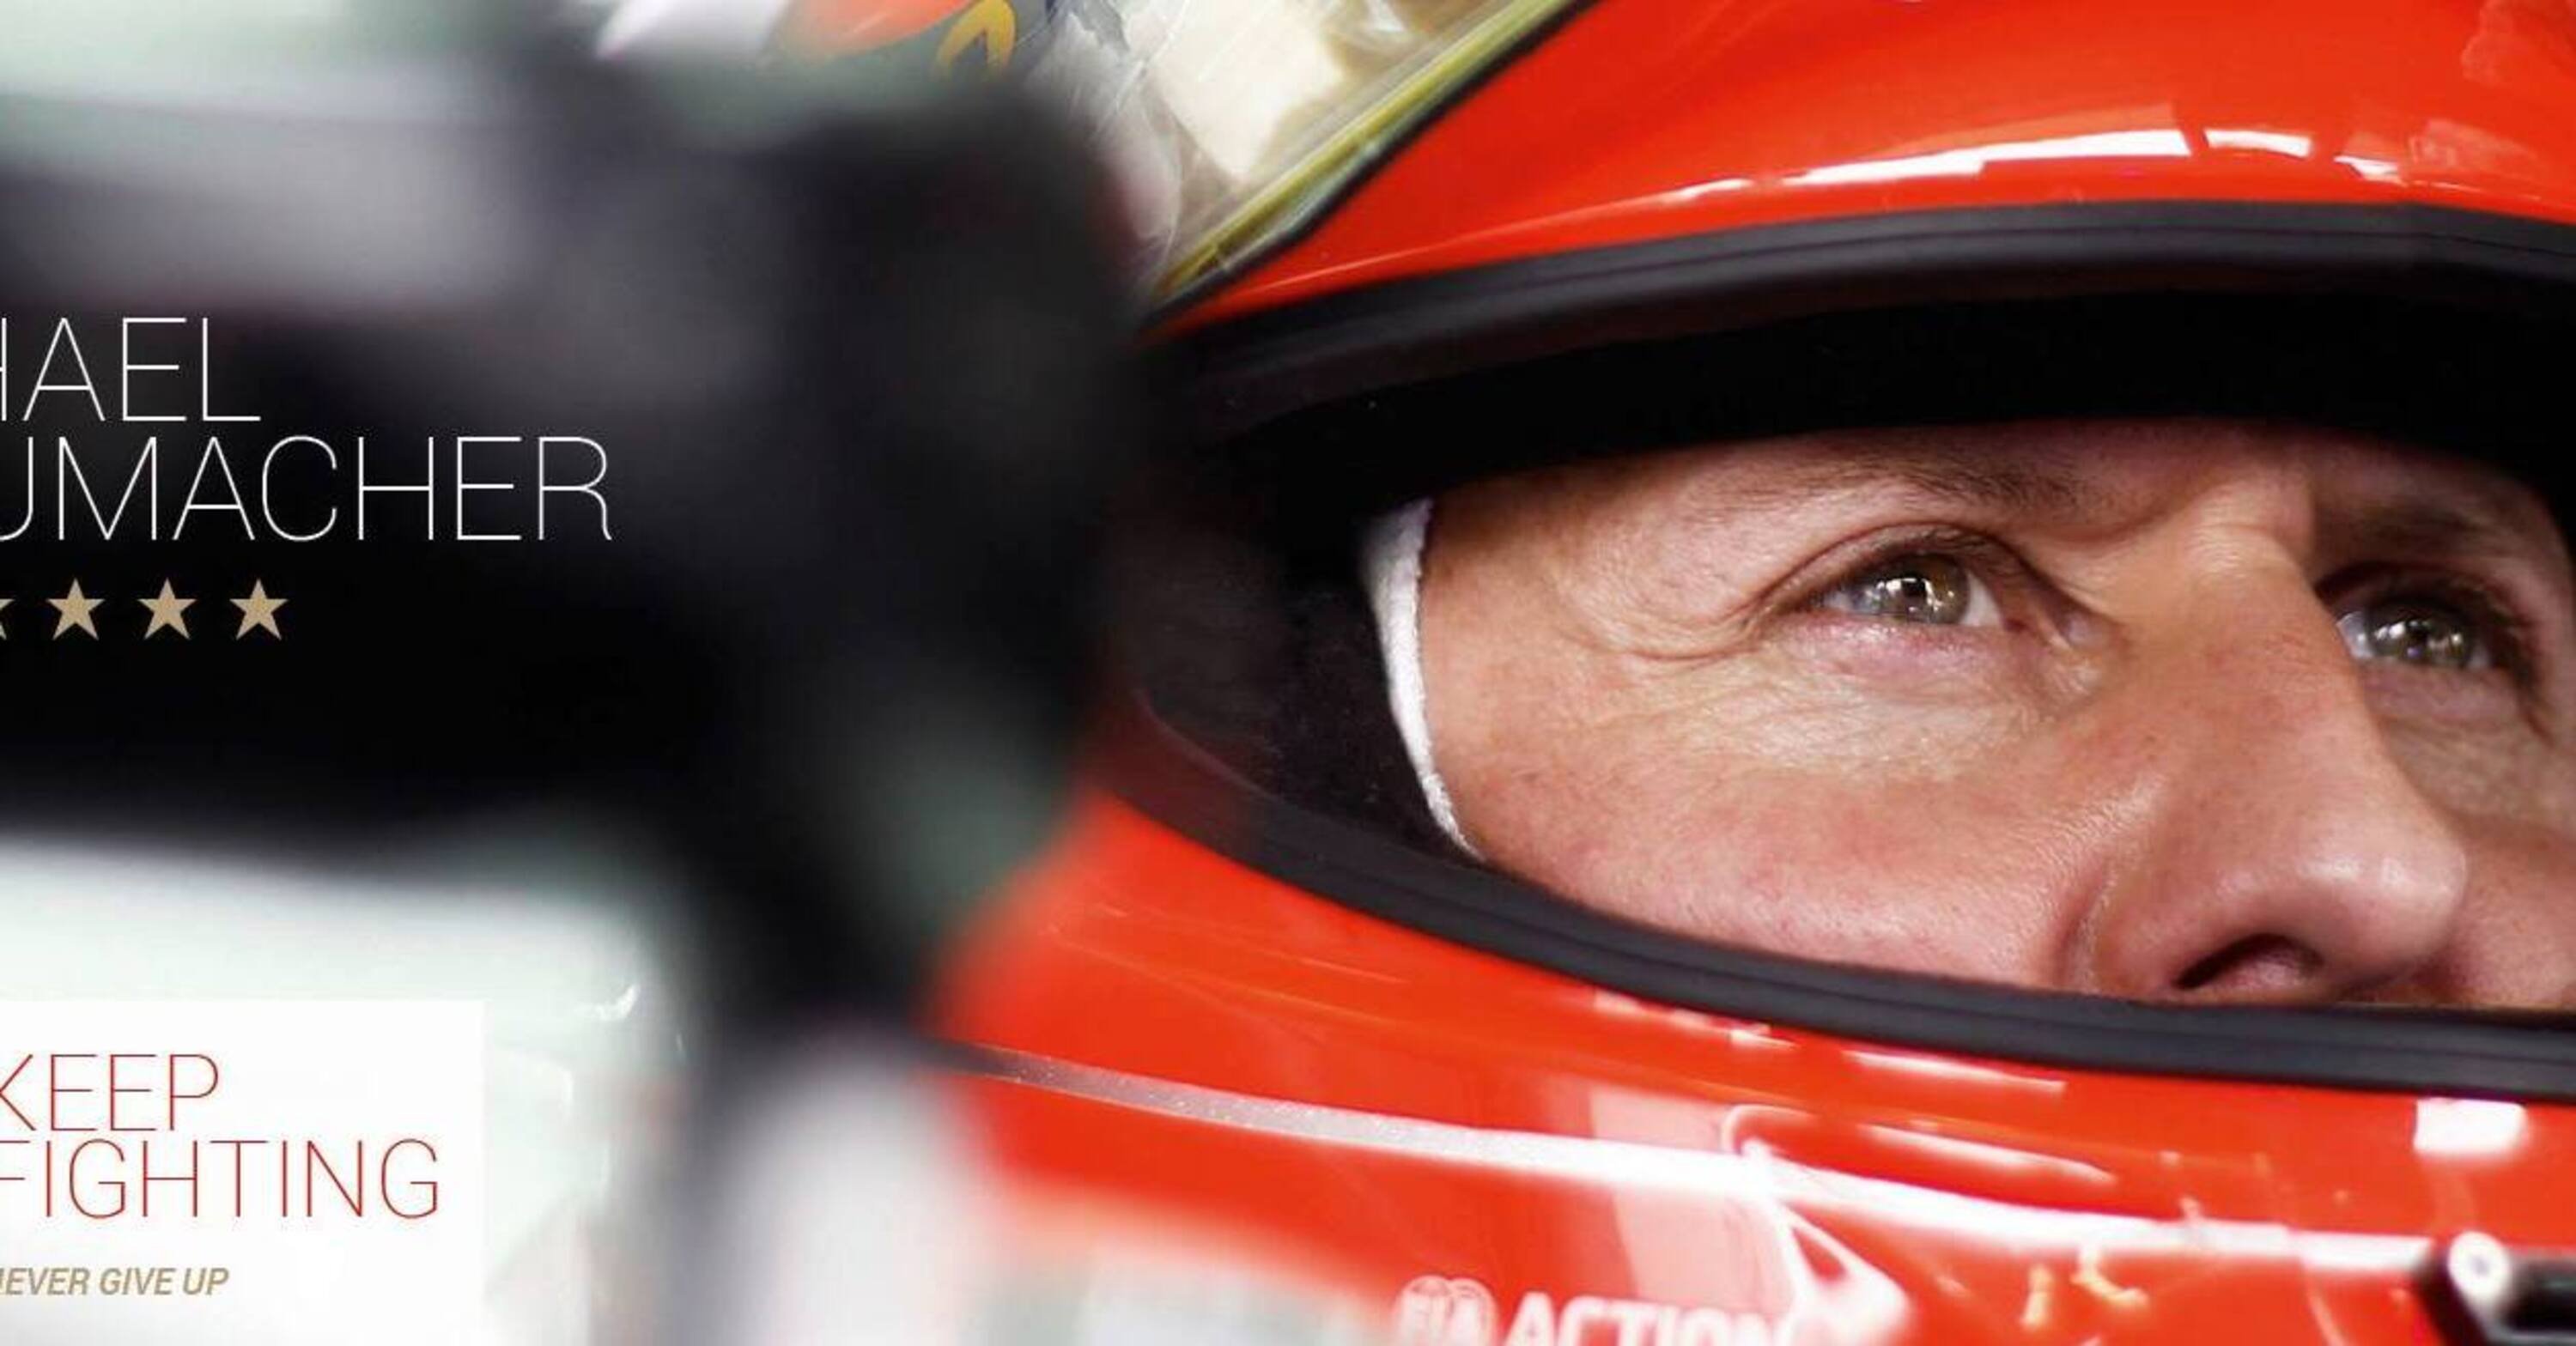 Nuove foto rubate di Michael Schumacher post-incidente in vendita? 1 milione di sterline e tanti dubbi